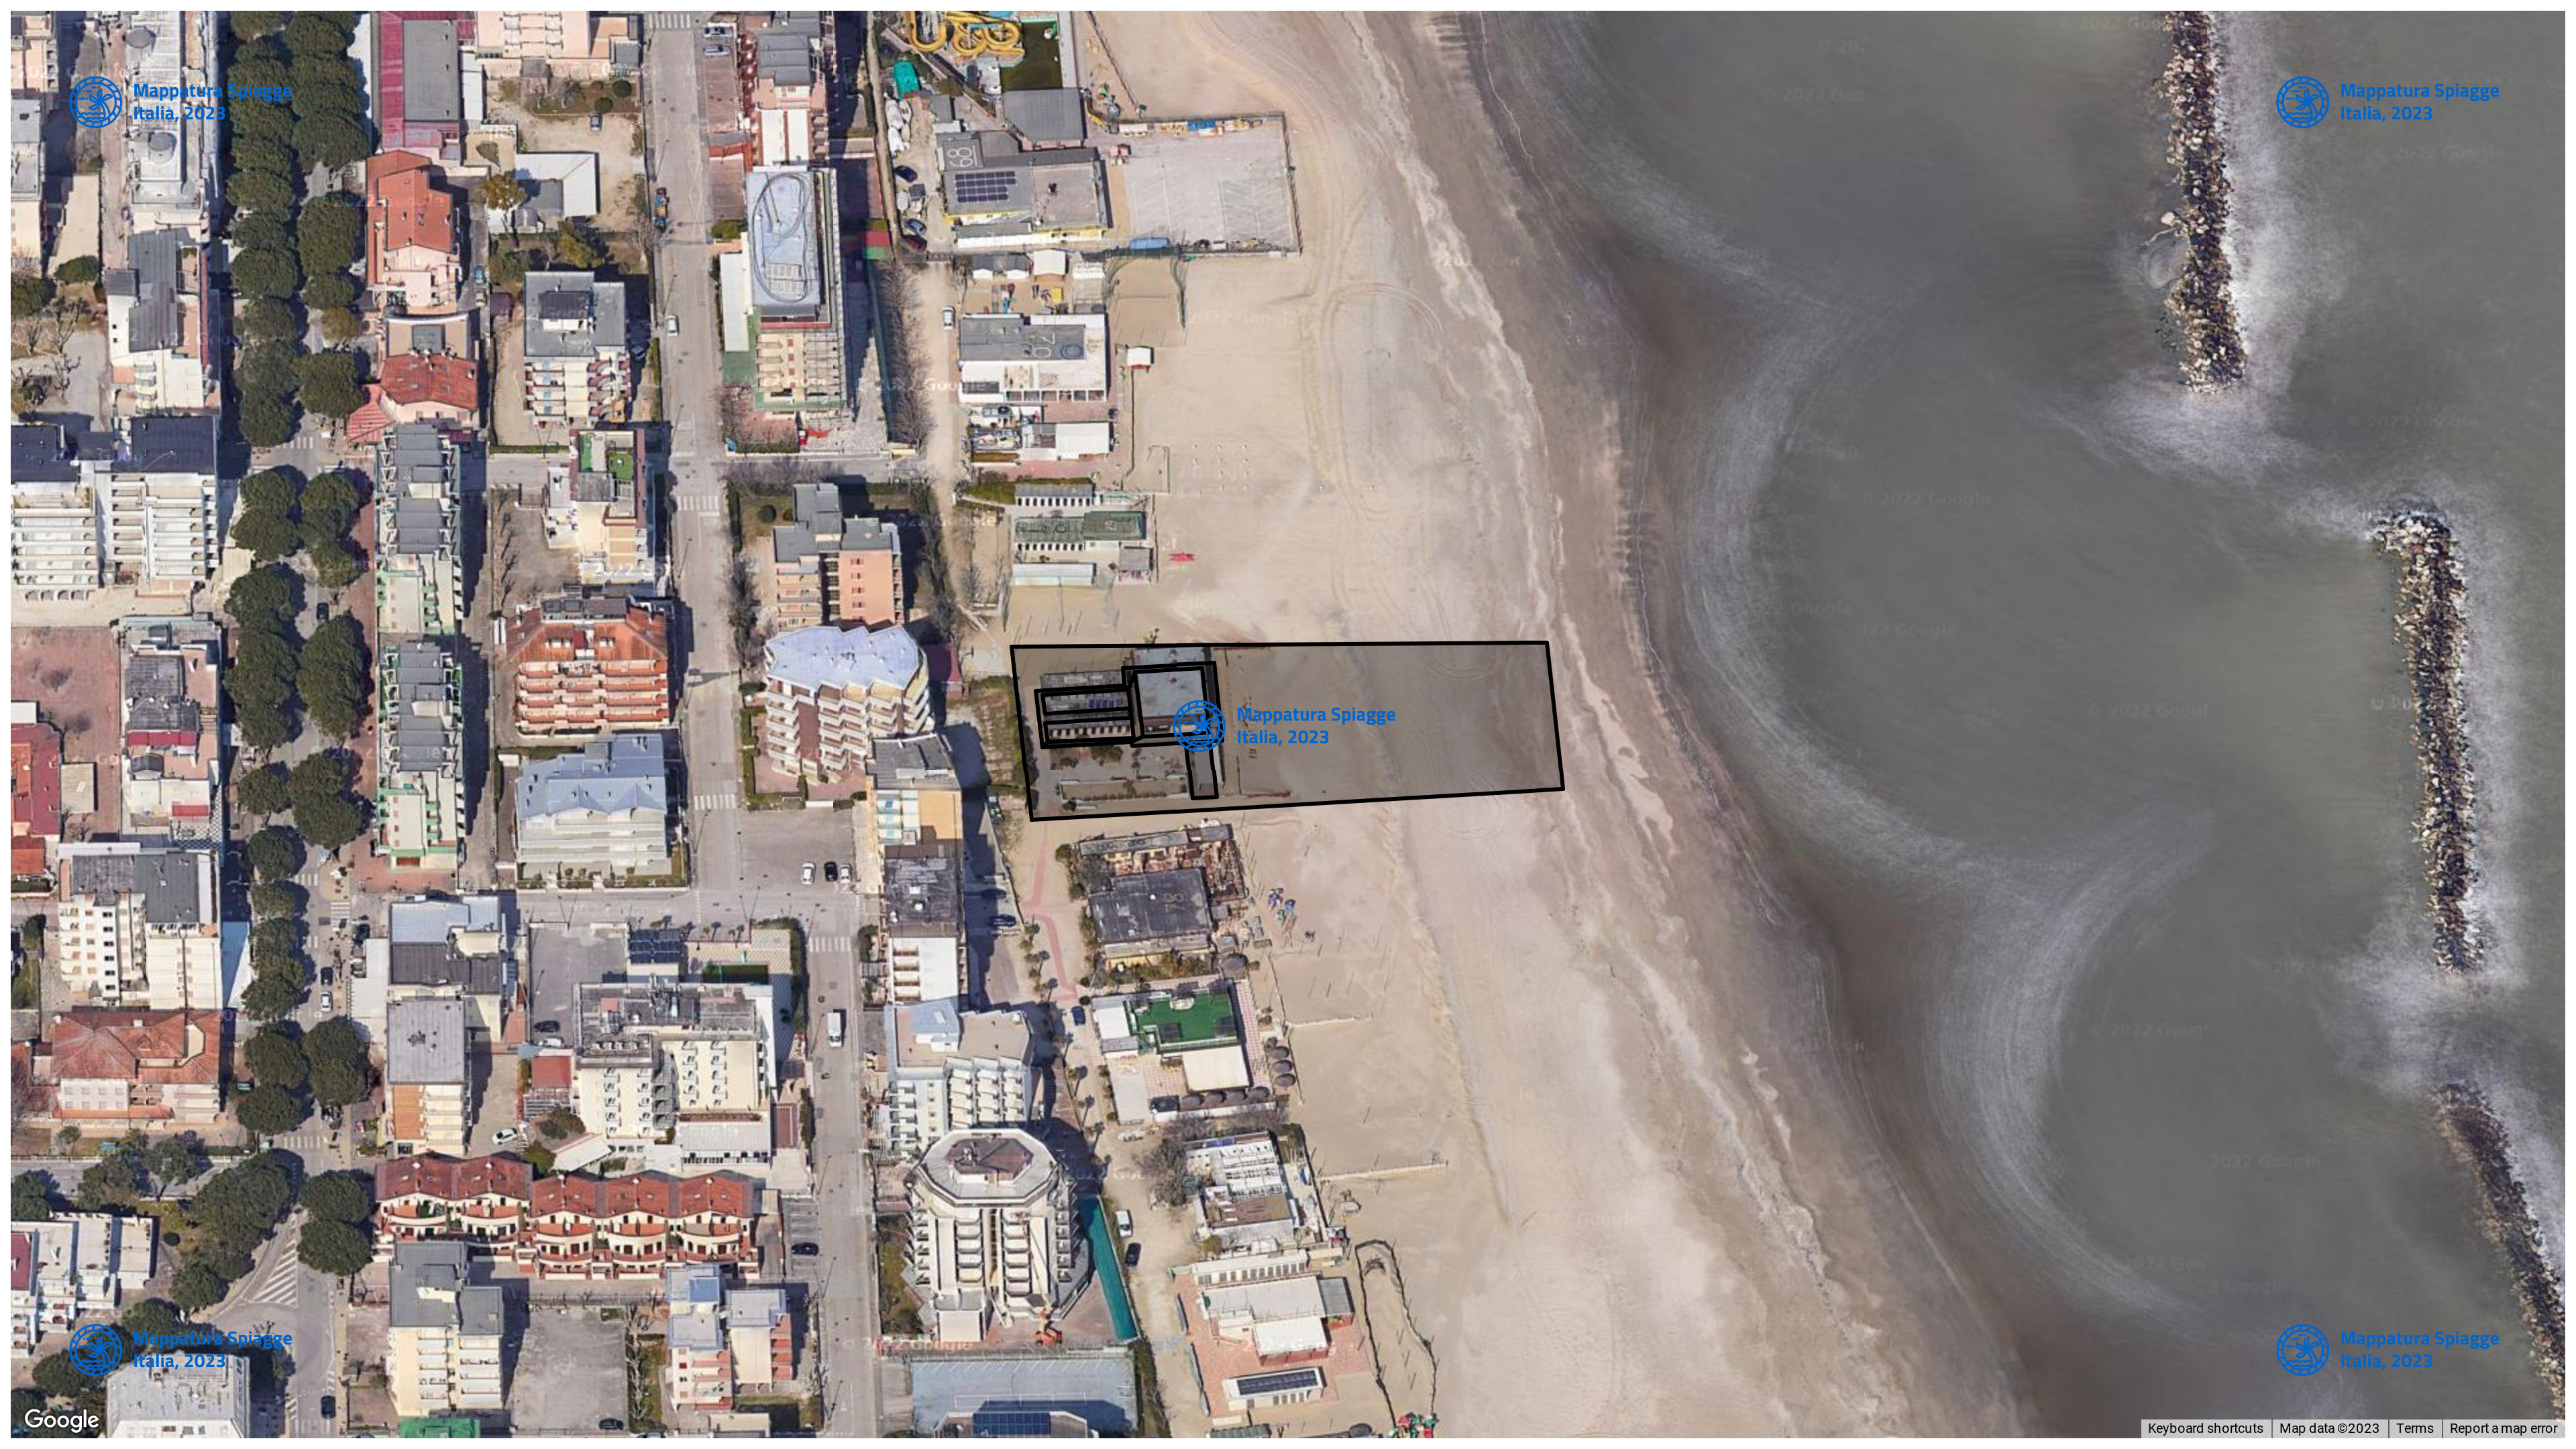 Foto Satellitare - Google Maps - Comune Ravenna, Concessione: N. 140 / 2008 del 20-09-2023